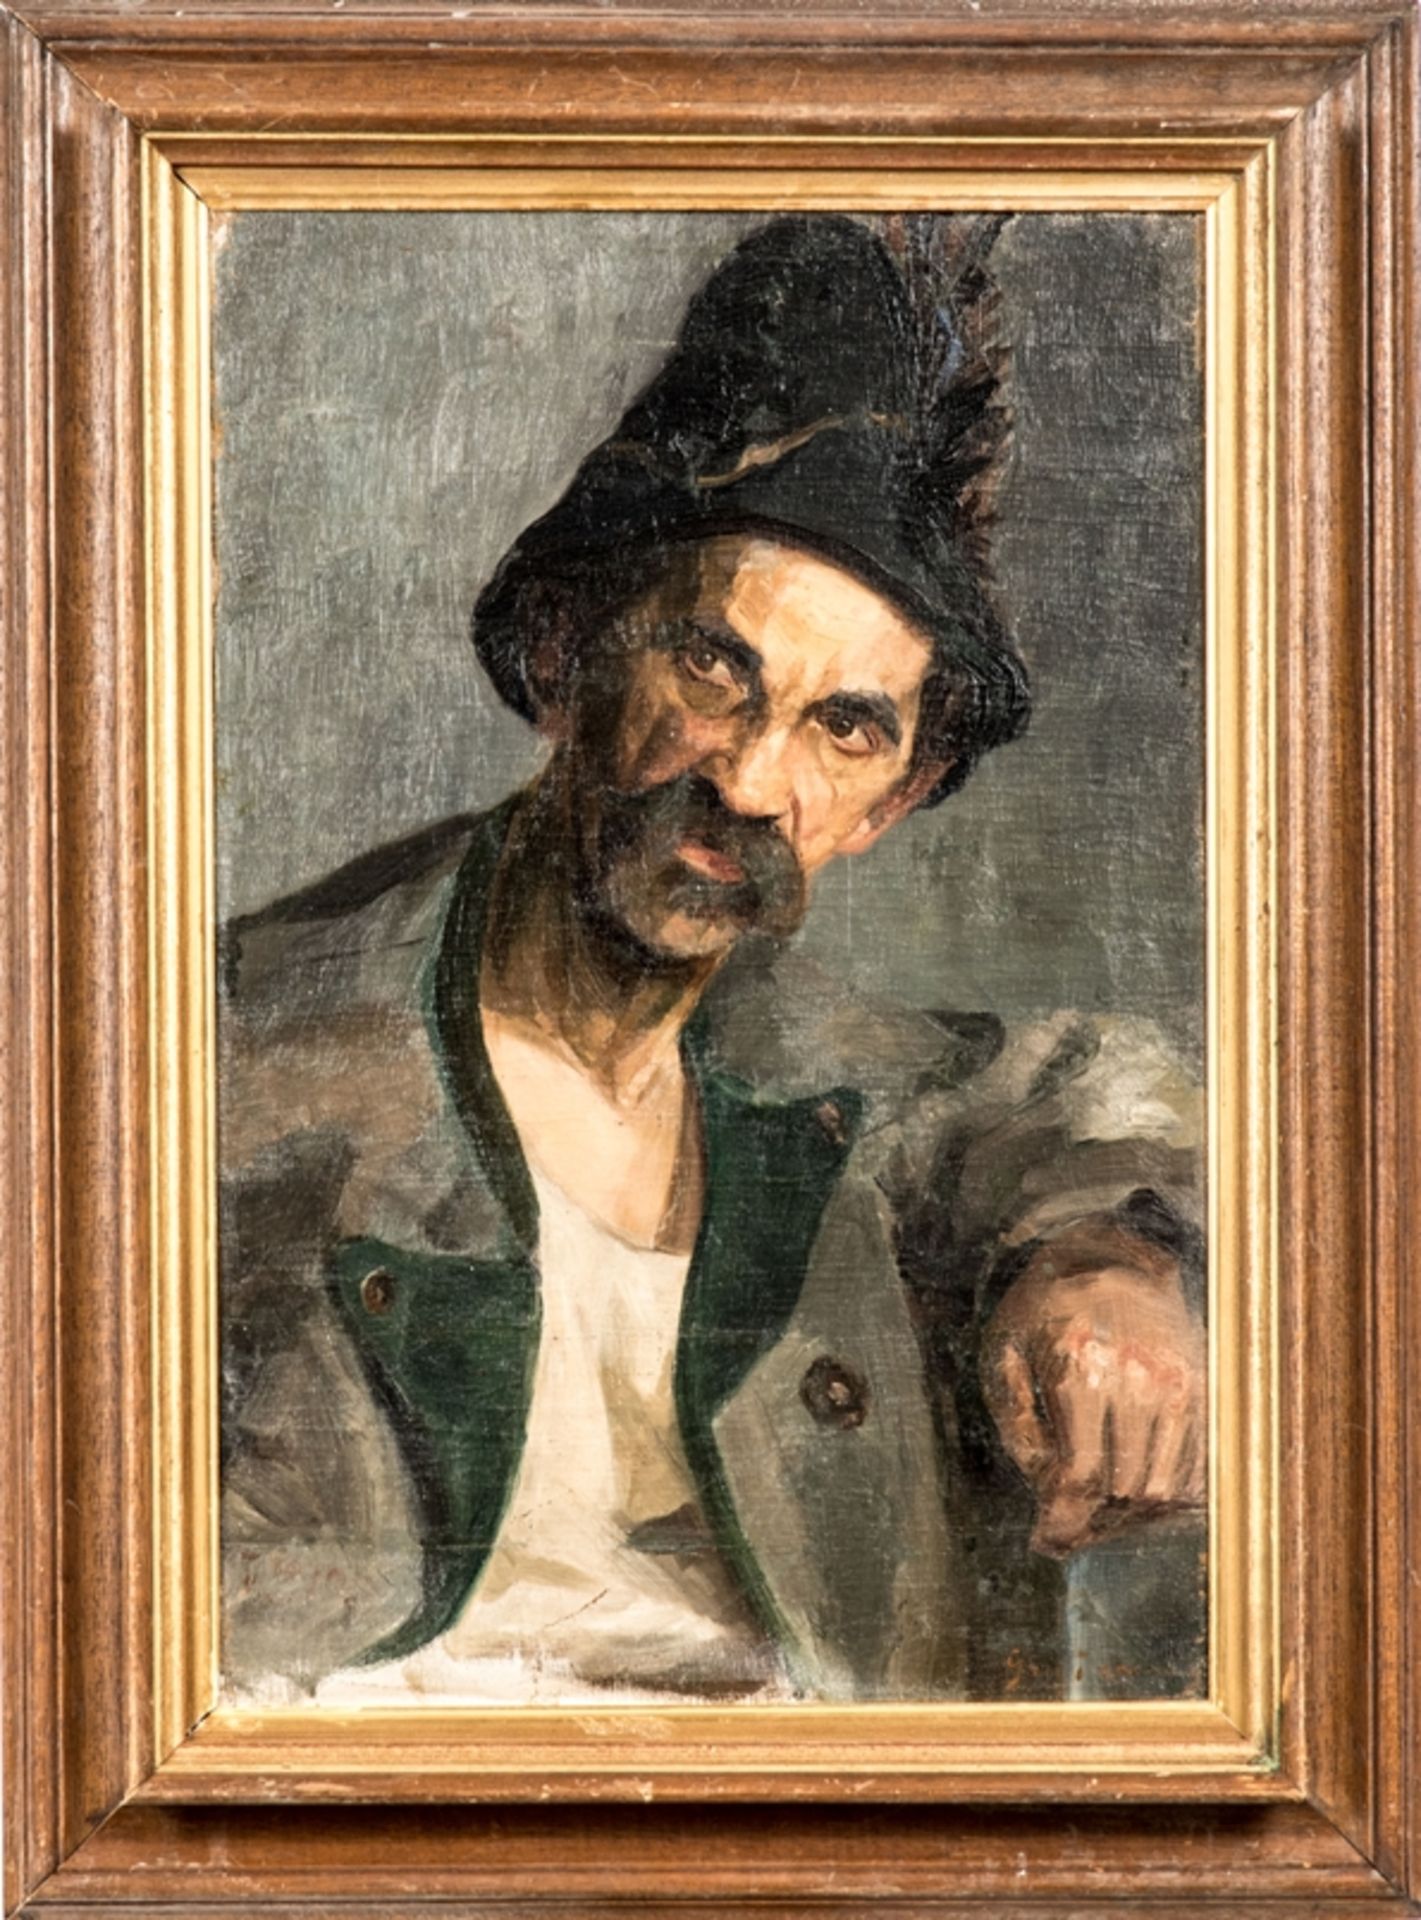 Grigorescu, Nicolas Jon (1838 - 1907)